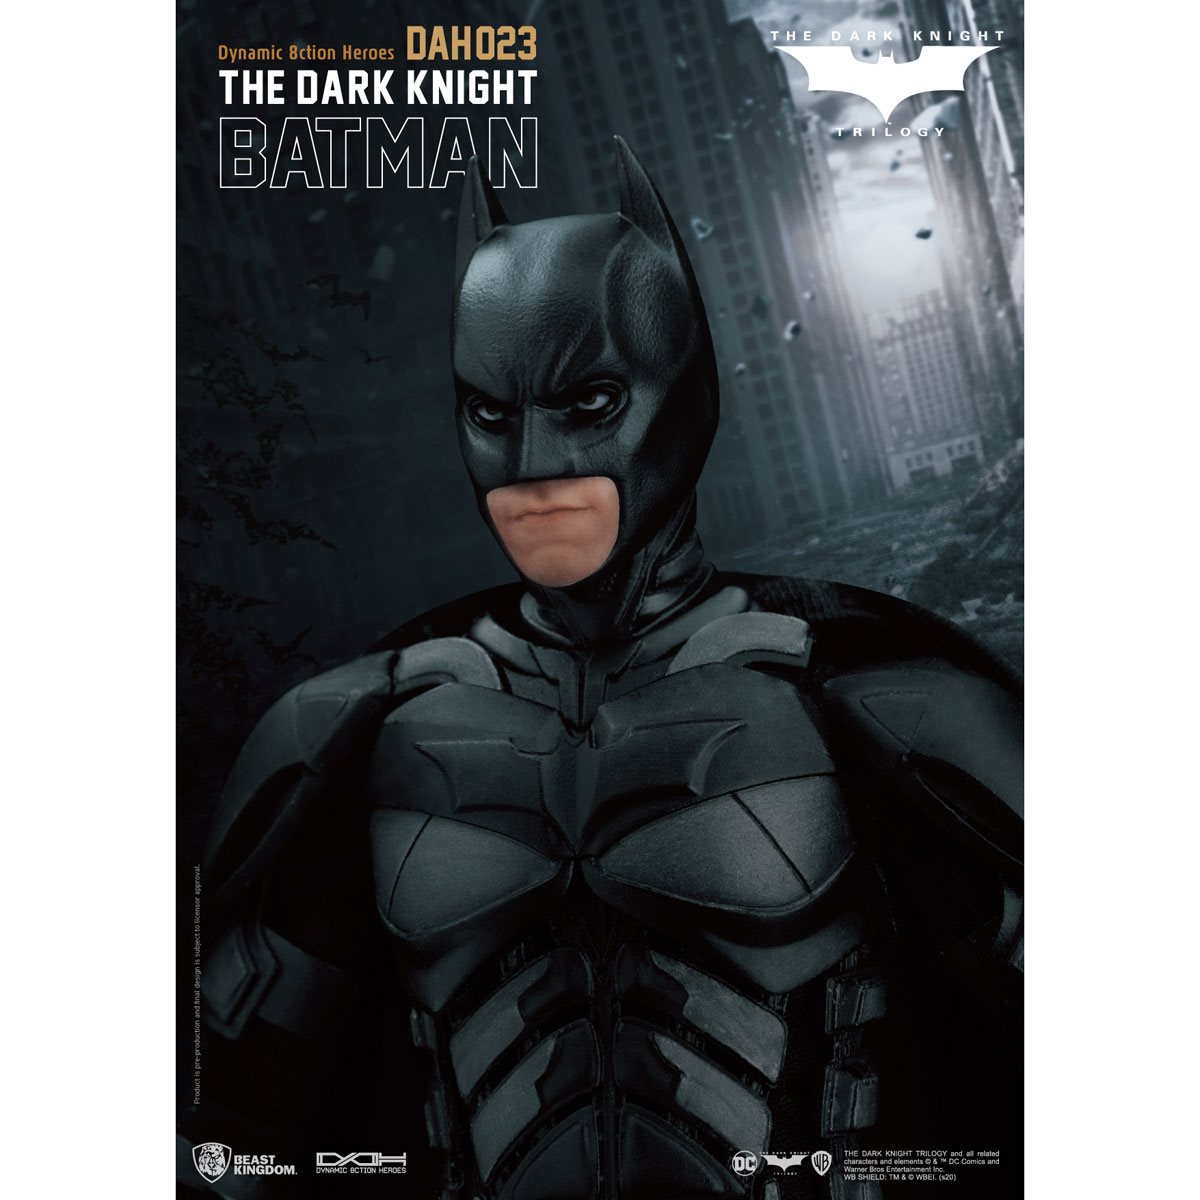 【格安通販】BEAST KINGDOM DAH-023 バットマン ダークナイト 1/9 フィギュア / DYNAMIC 8CTION HEROES BATMAN DARK KNIGHT バットマン